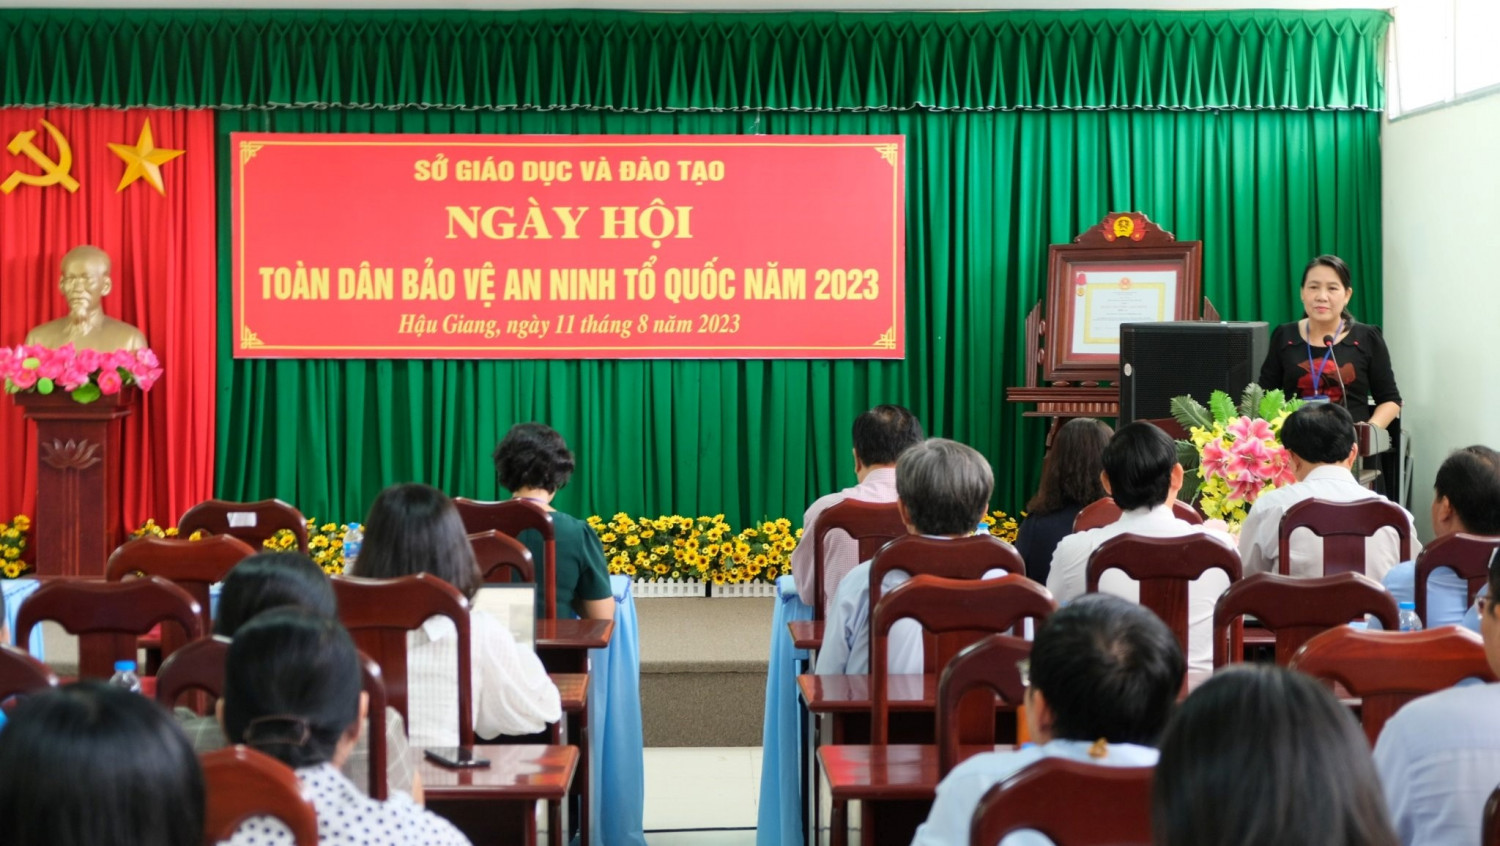 Đ/c Nguyễn Hoài Thúy Hằng, Giám đốc Sở Giáo dục và Đào tạo phát biểu chỉ đạo tại ngày Hội toàn dân bảo vệ an ninh Tổ quốc